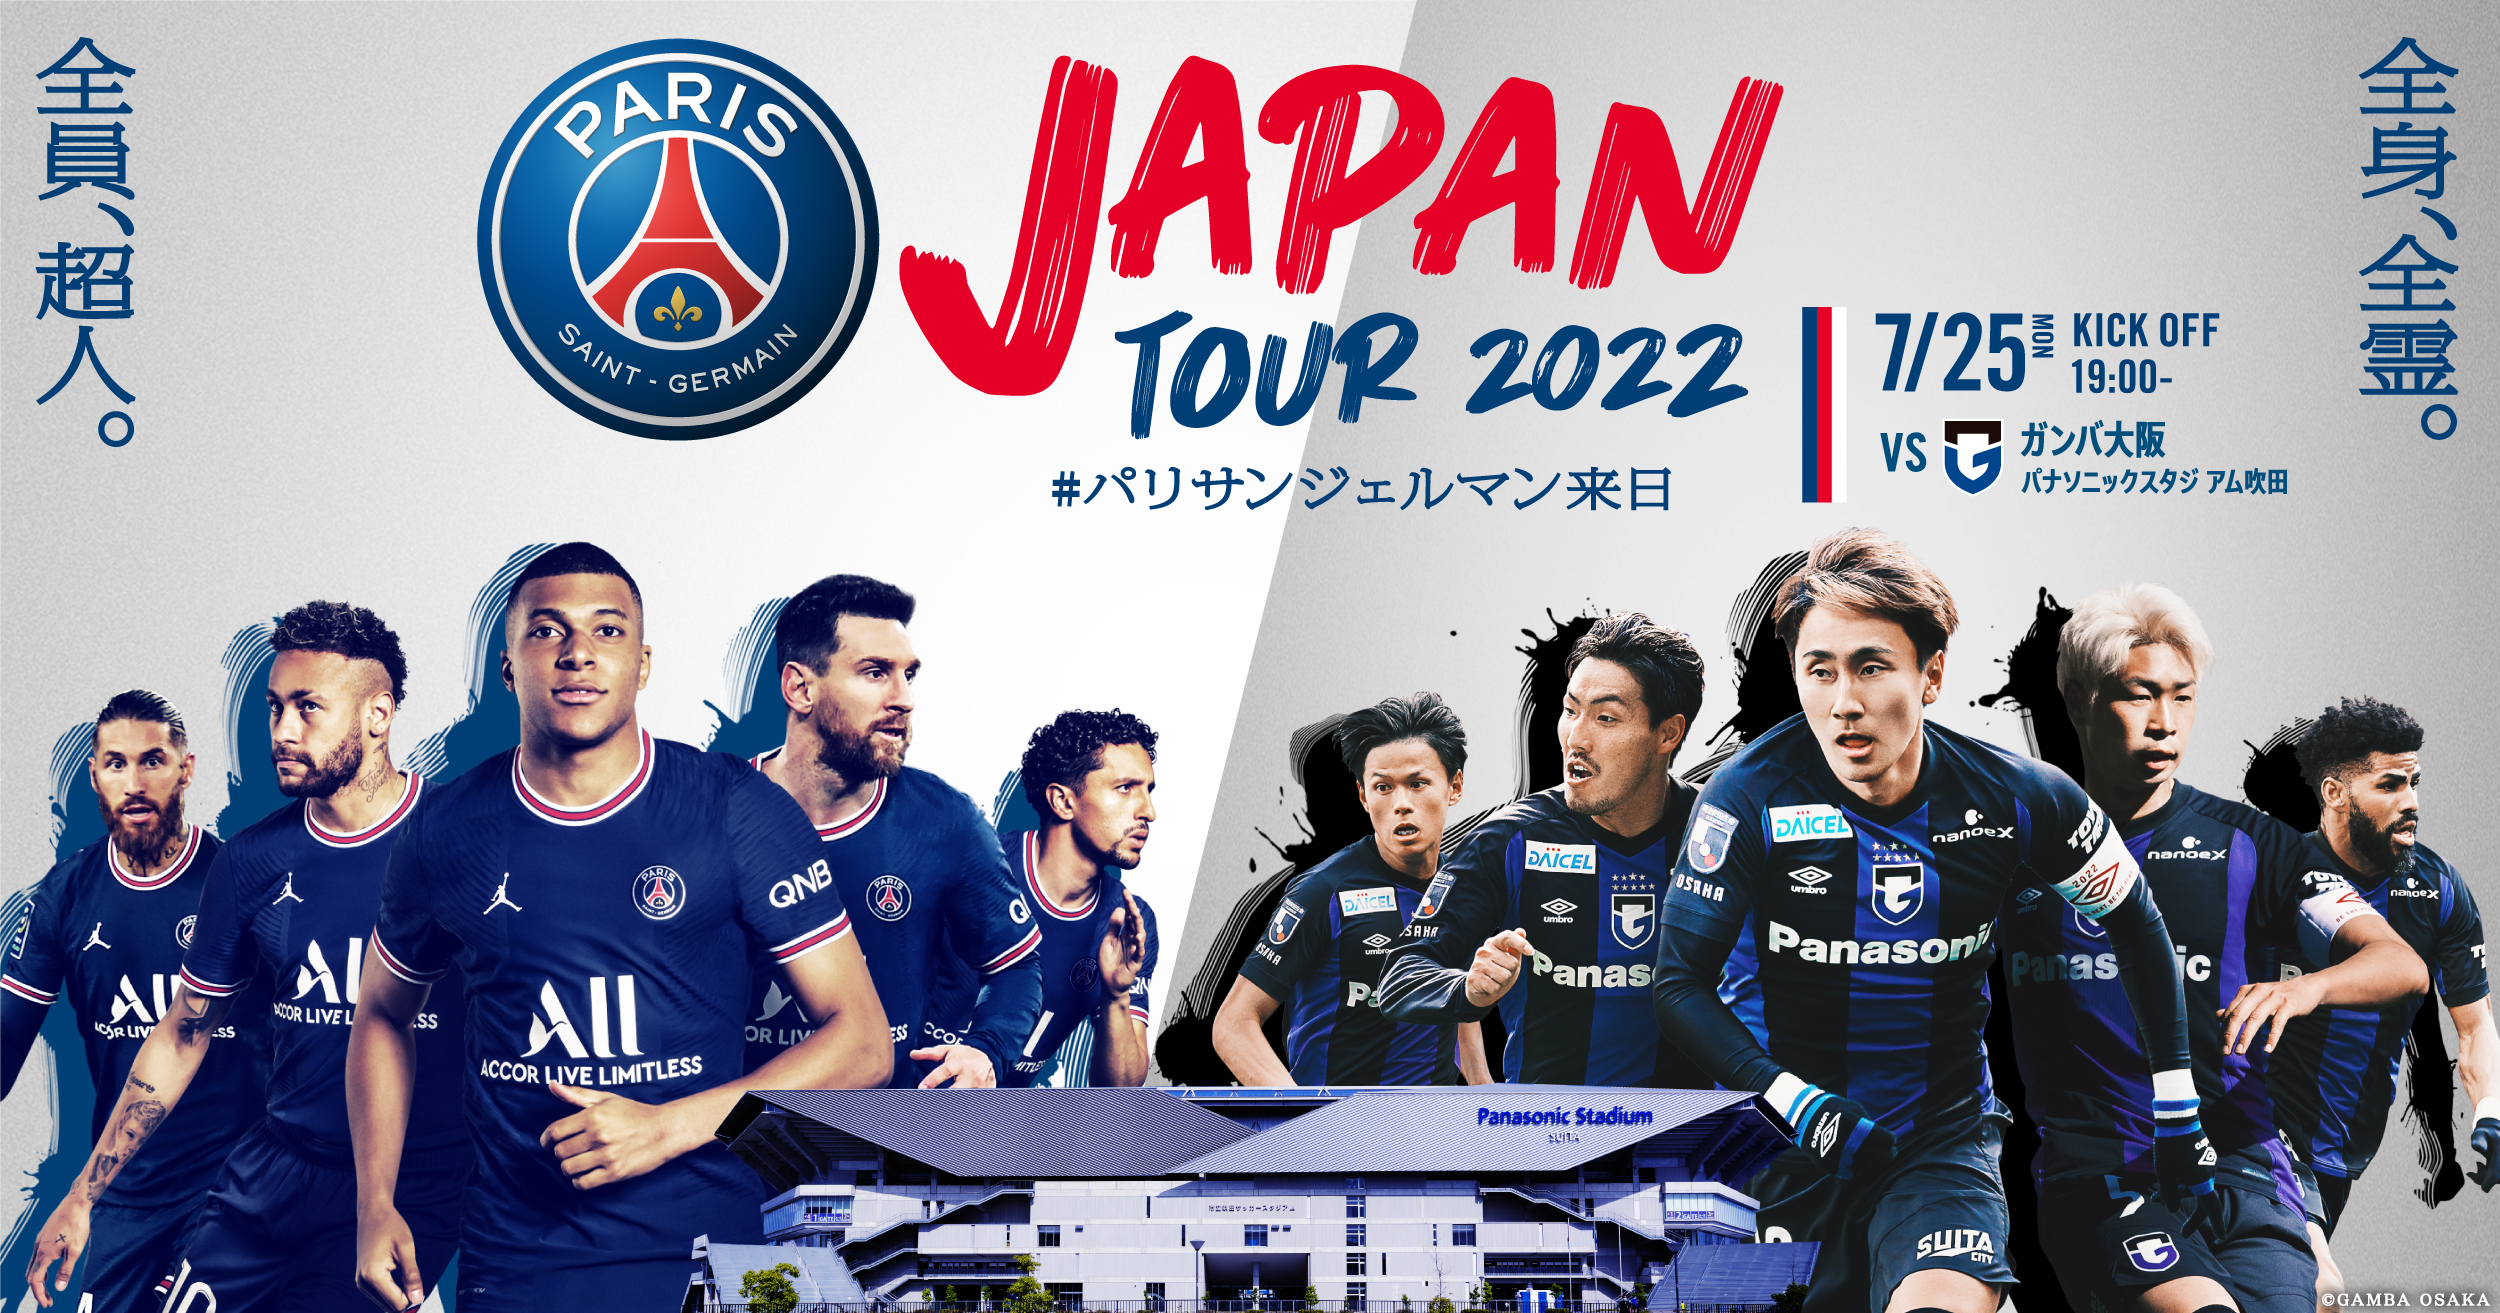 PSG JAPAN TOUR 2022 (@PSG_JAPAN_TOUR) / Twitter